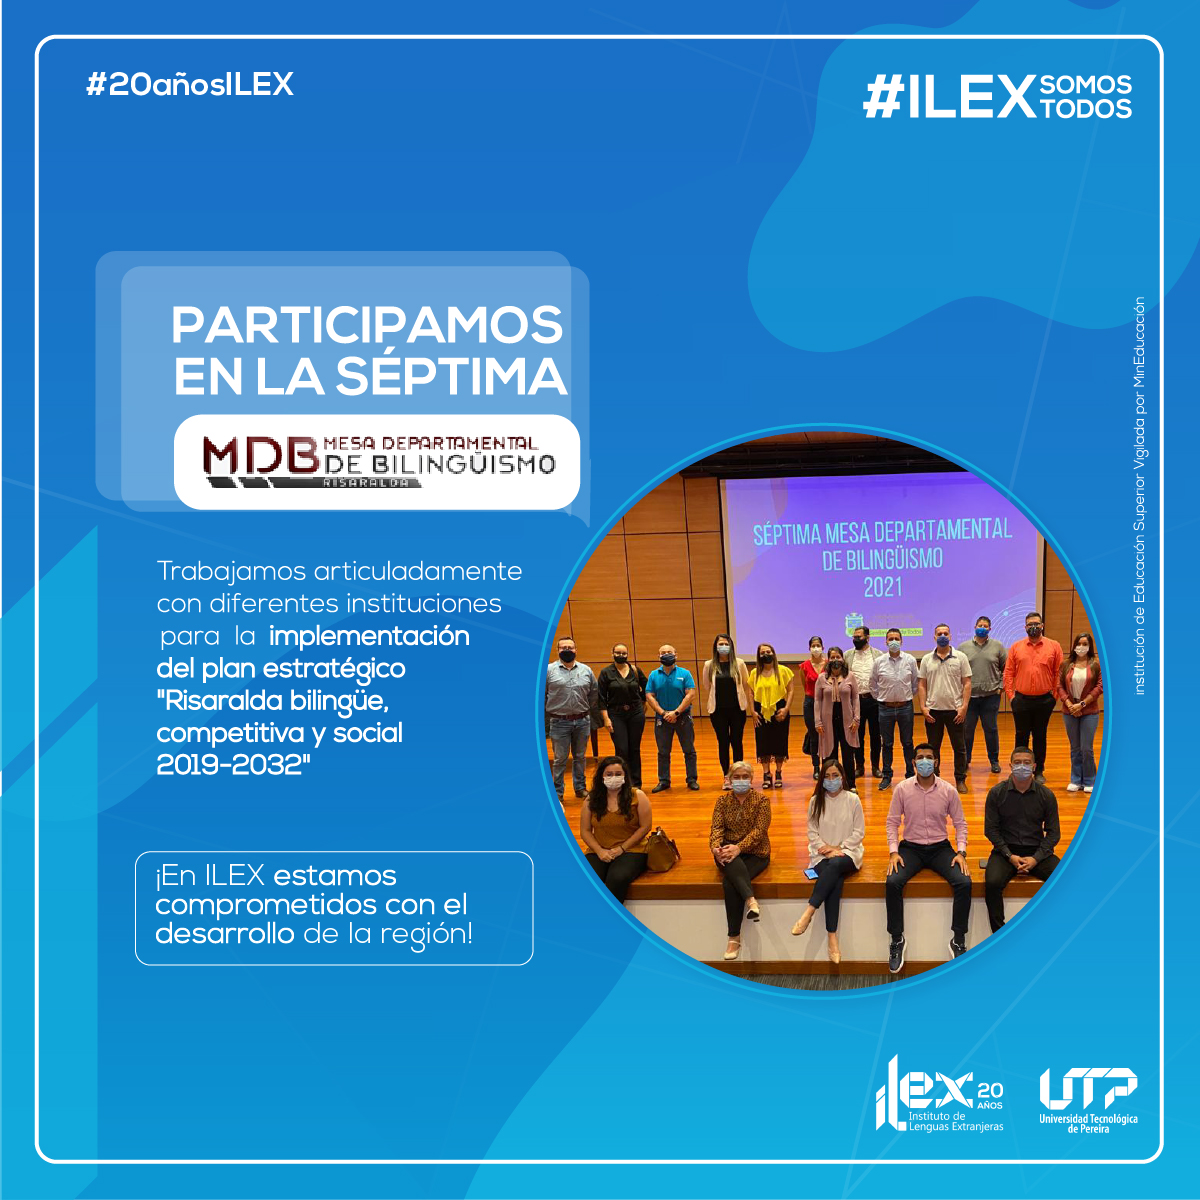 El Instituto de Lenguas Extranjeras ILEX presente en la Séptima Mesa Departamental de Bilingüismo 2021